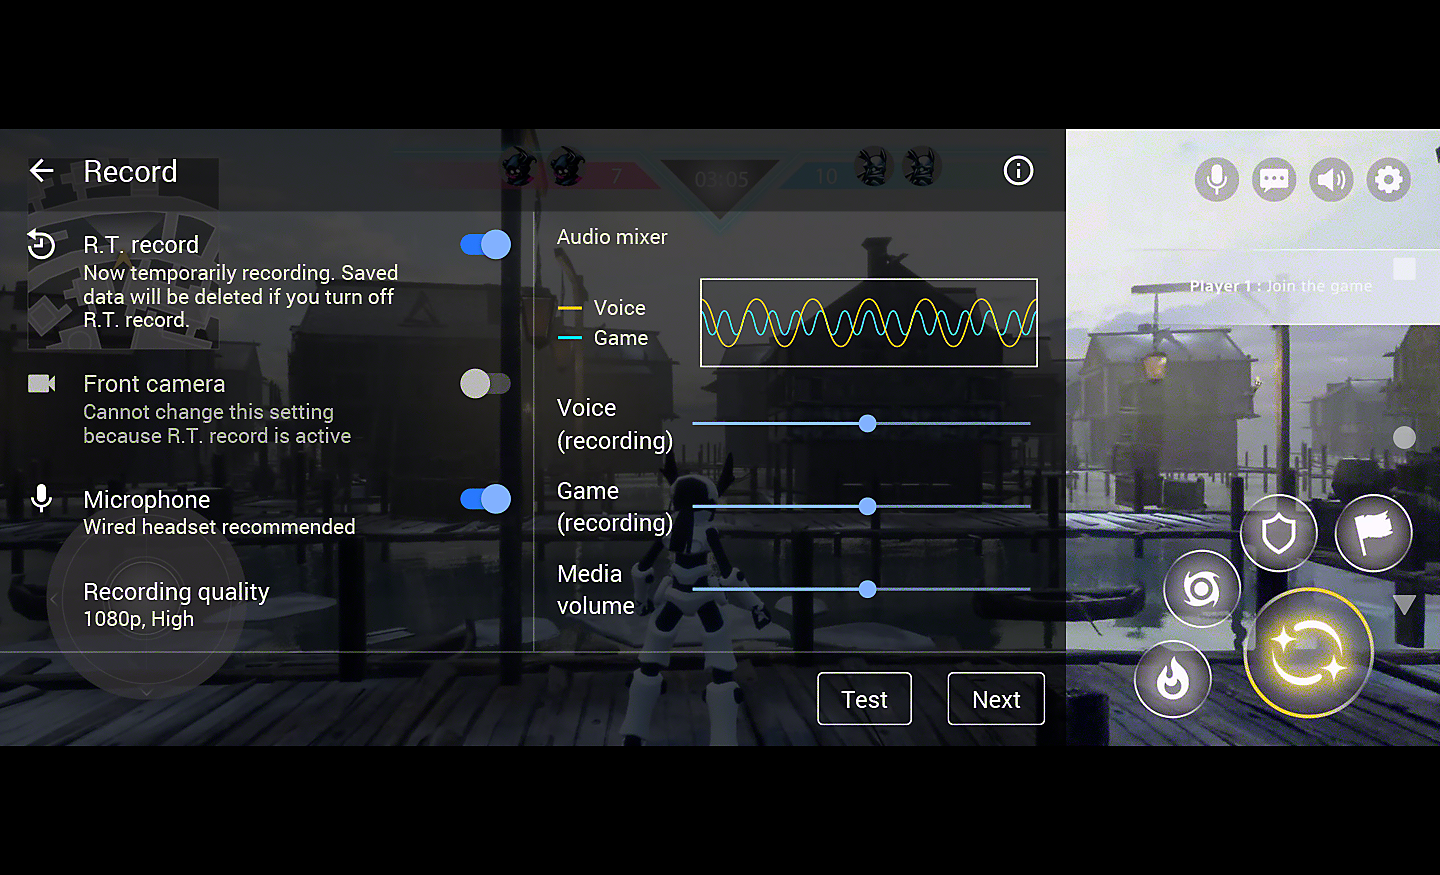 Capture d'écran montrant l'interface utilisateur des paramètres réglables avec notamment l'enregistrement R.T.